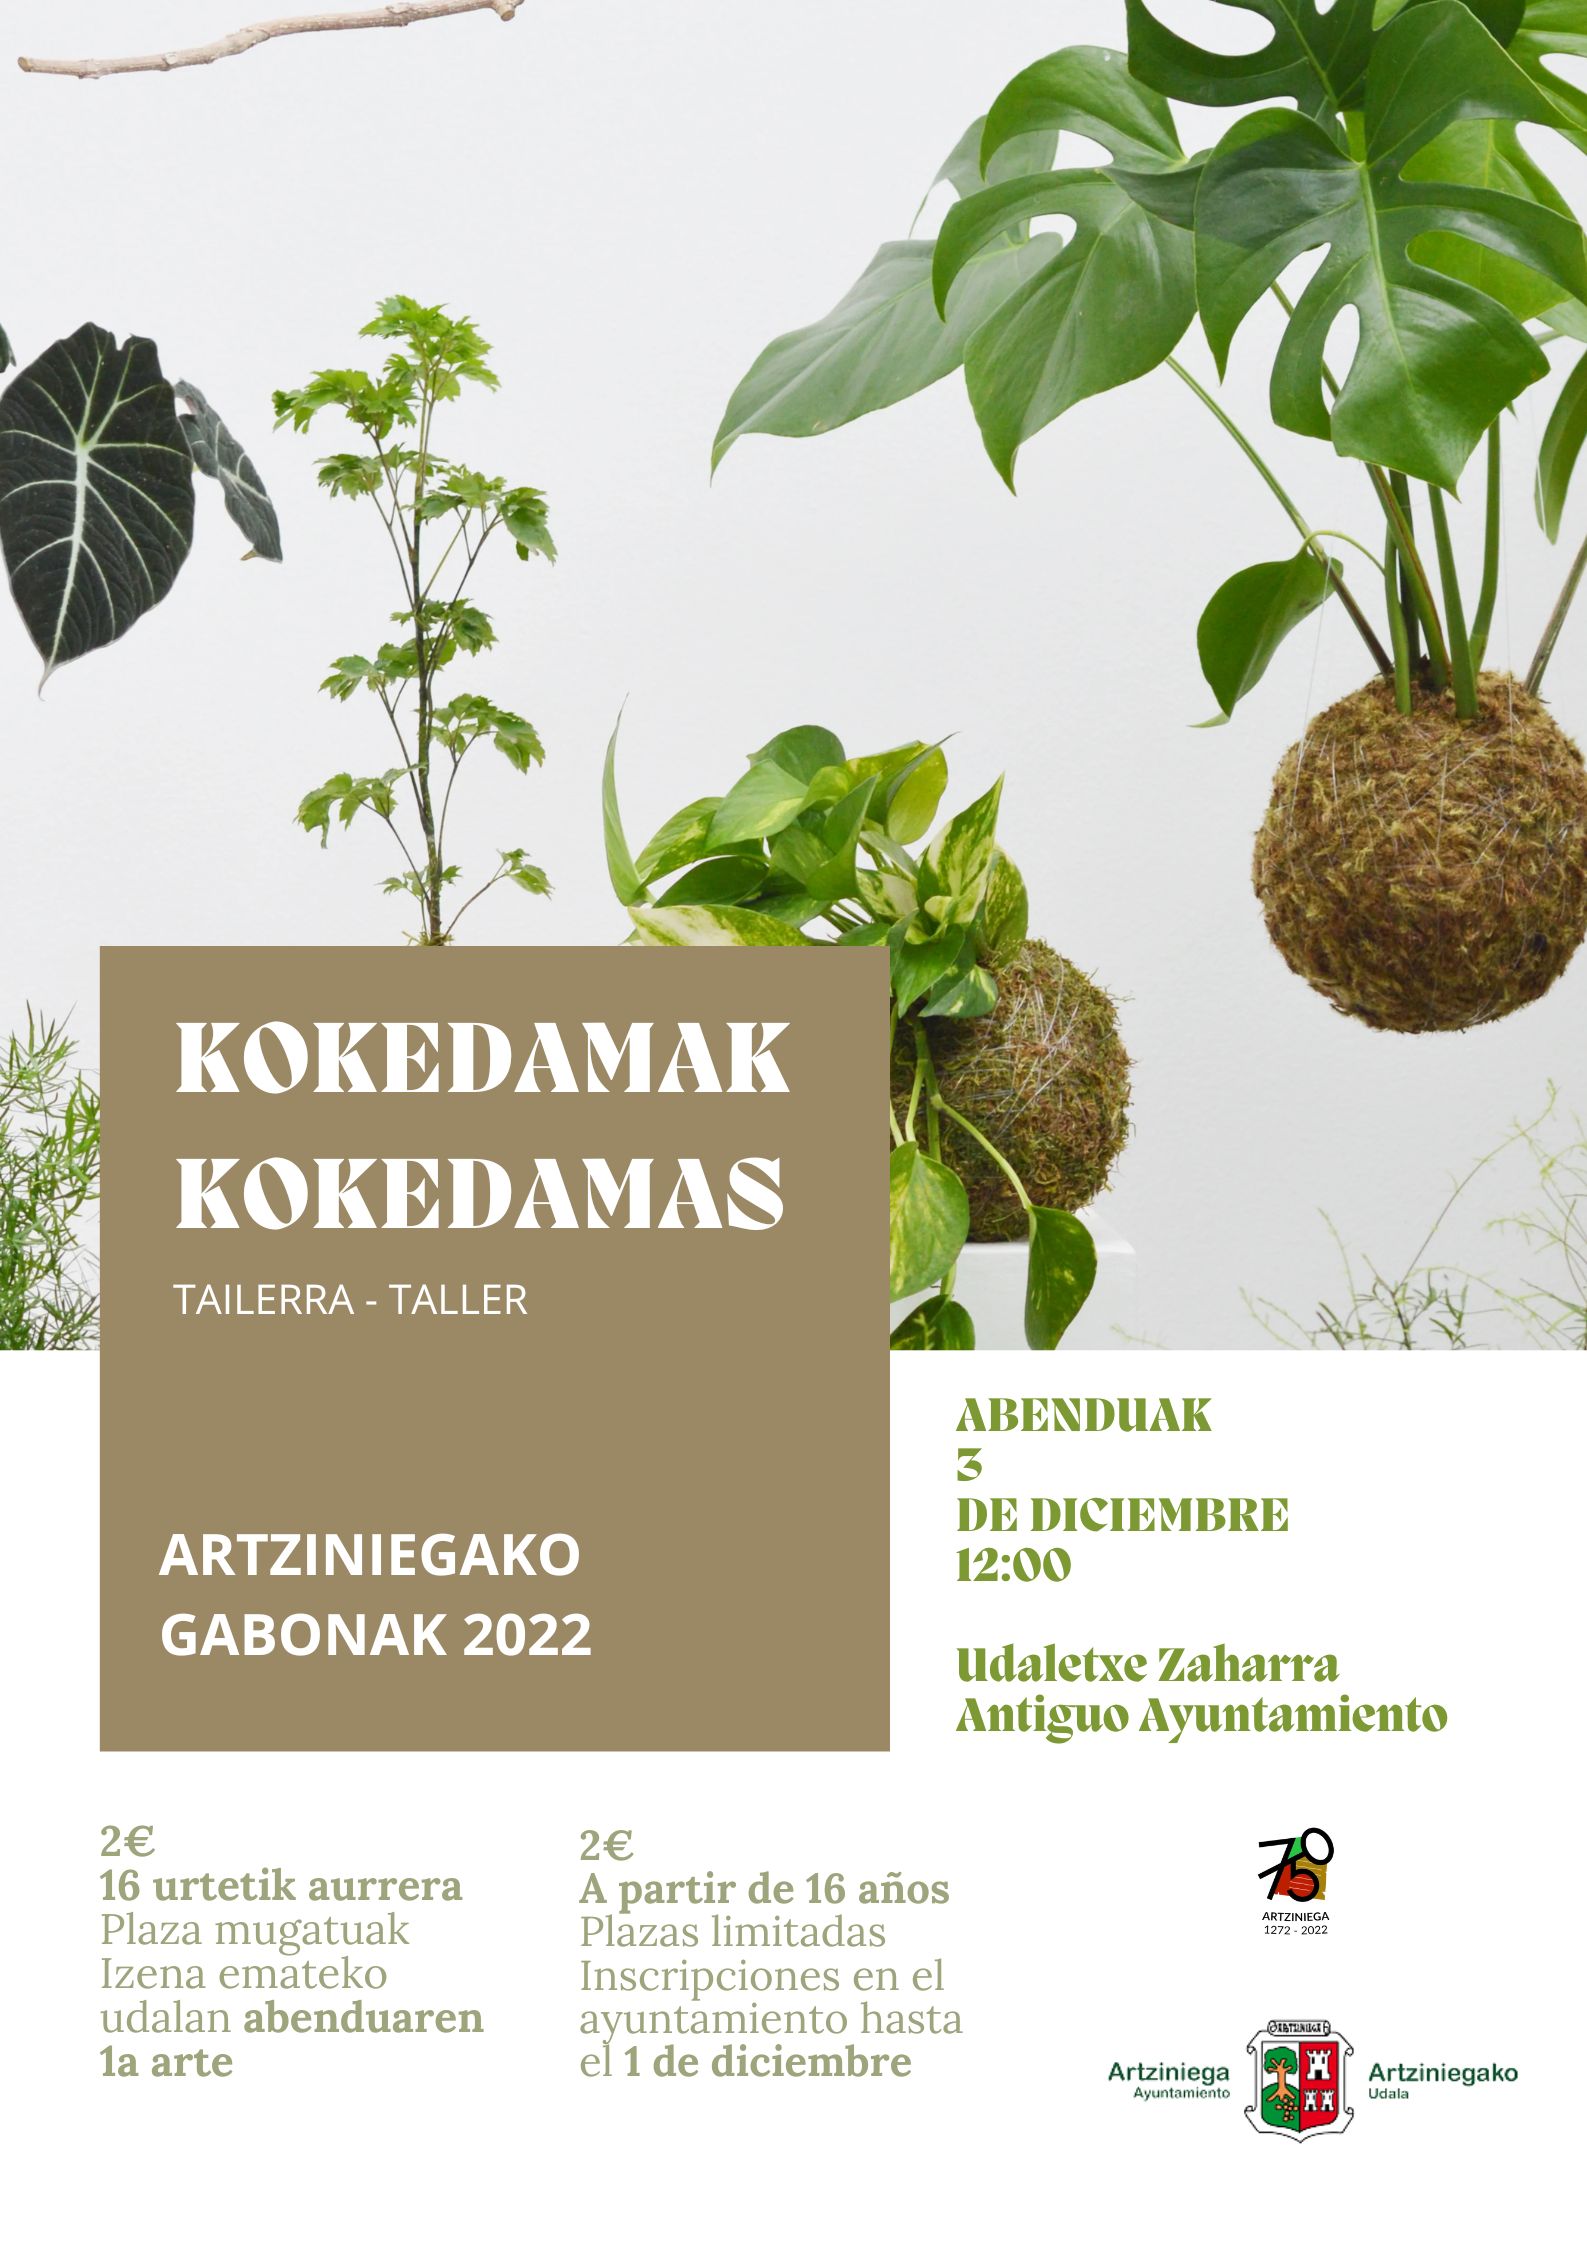 ARTZINIEGAKO GABONAK 2022: TALLER KOKEDAMAS (3 de diciembre a las 12:00 en el Antiguo Ayuntamieneto)